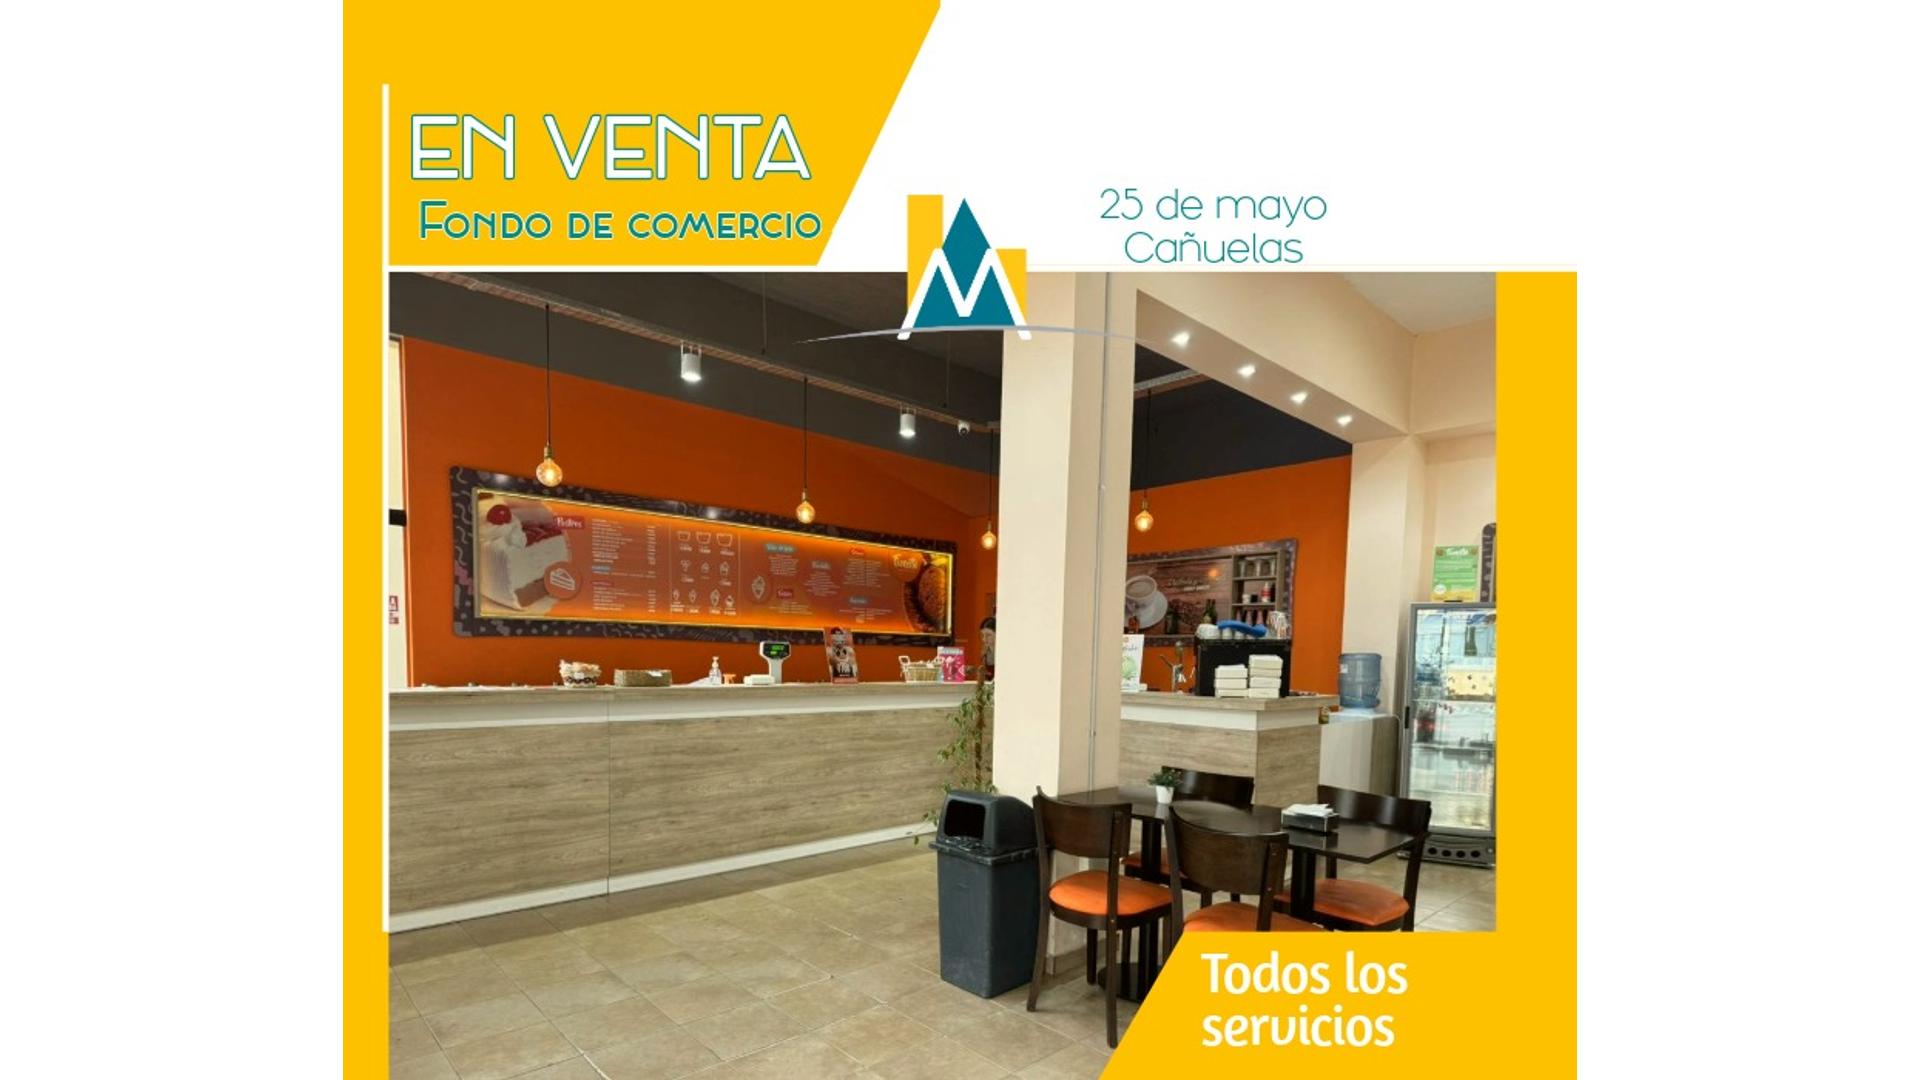 #5130038 | Venta | Fondo de Comercio | Cañuelas (Marcela Miranda Inmobiliaria)